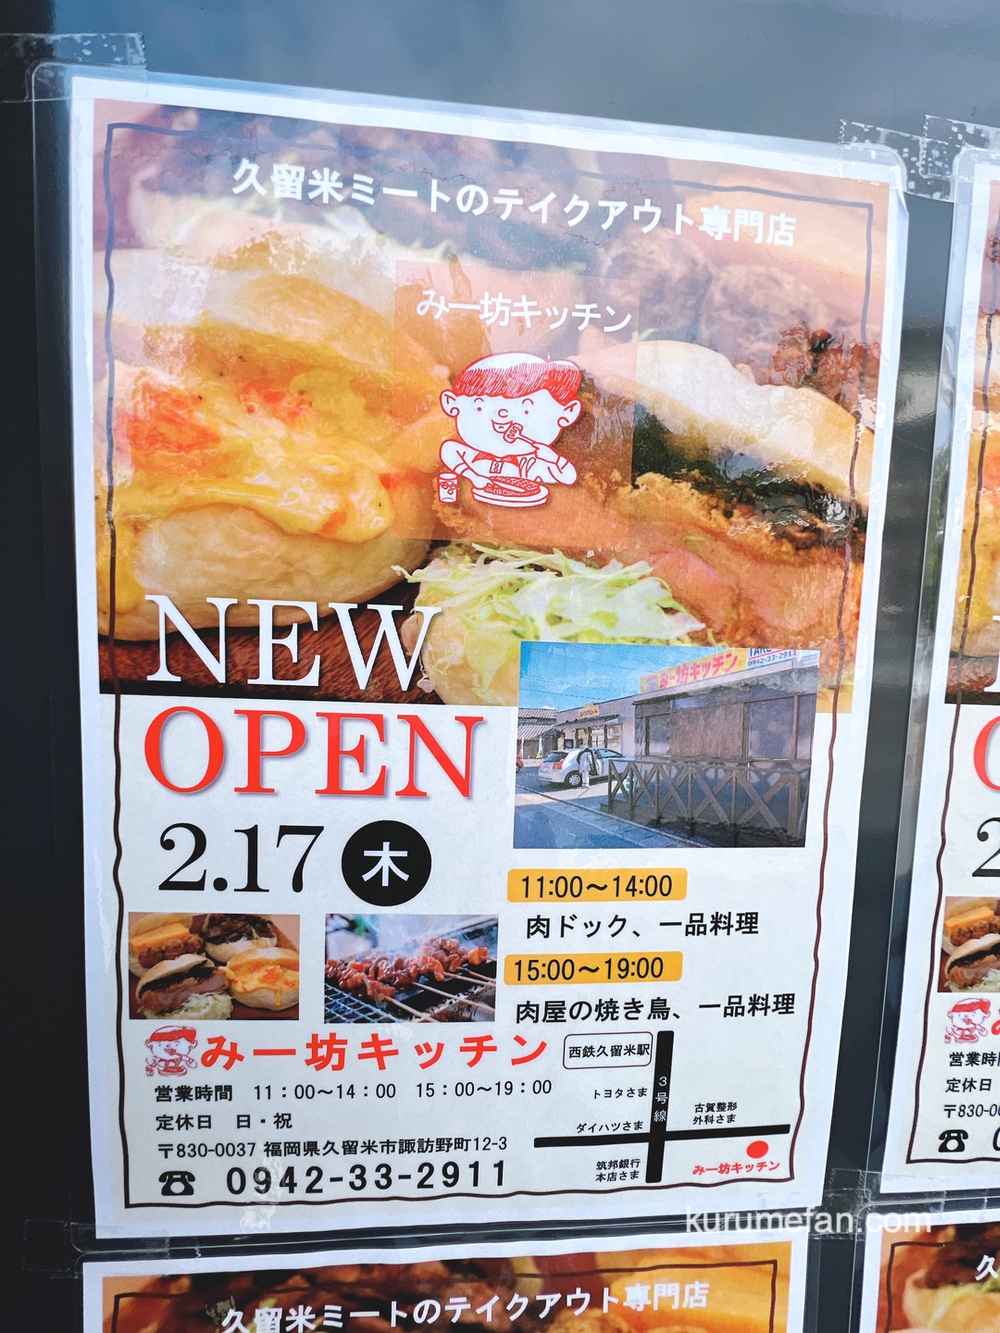 みー坊キッチン 久留米ミートのテイクアウト専門店が2月17日オープン【久留米市】